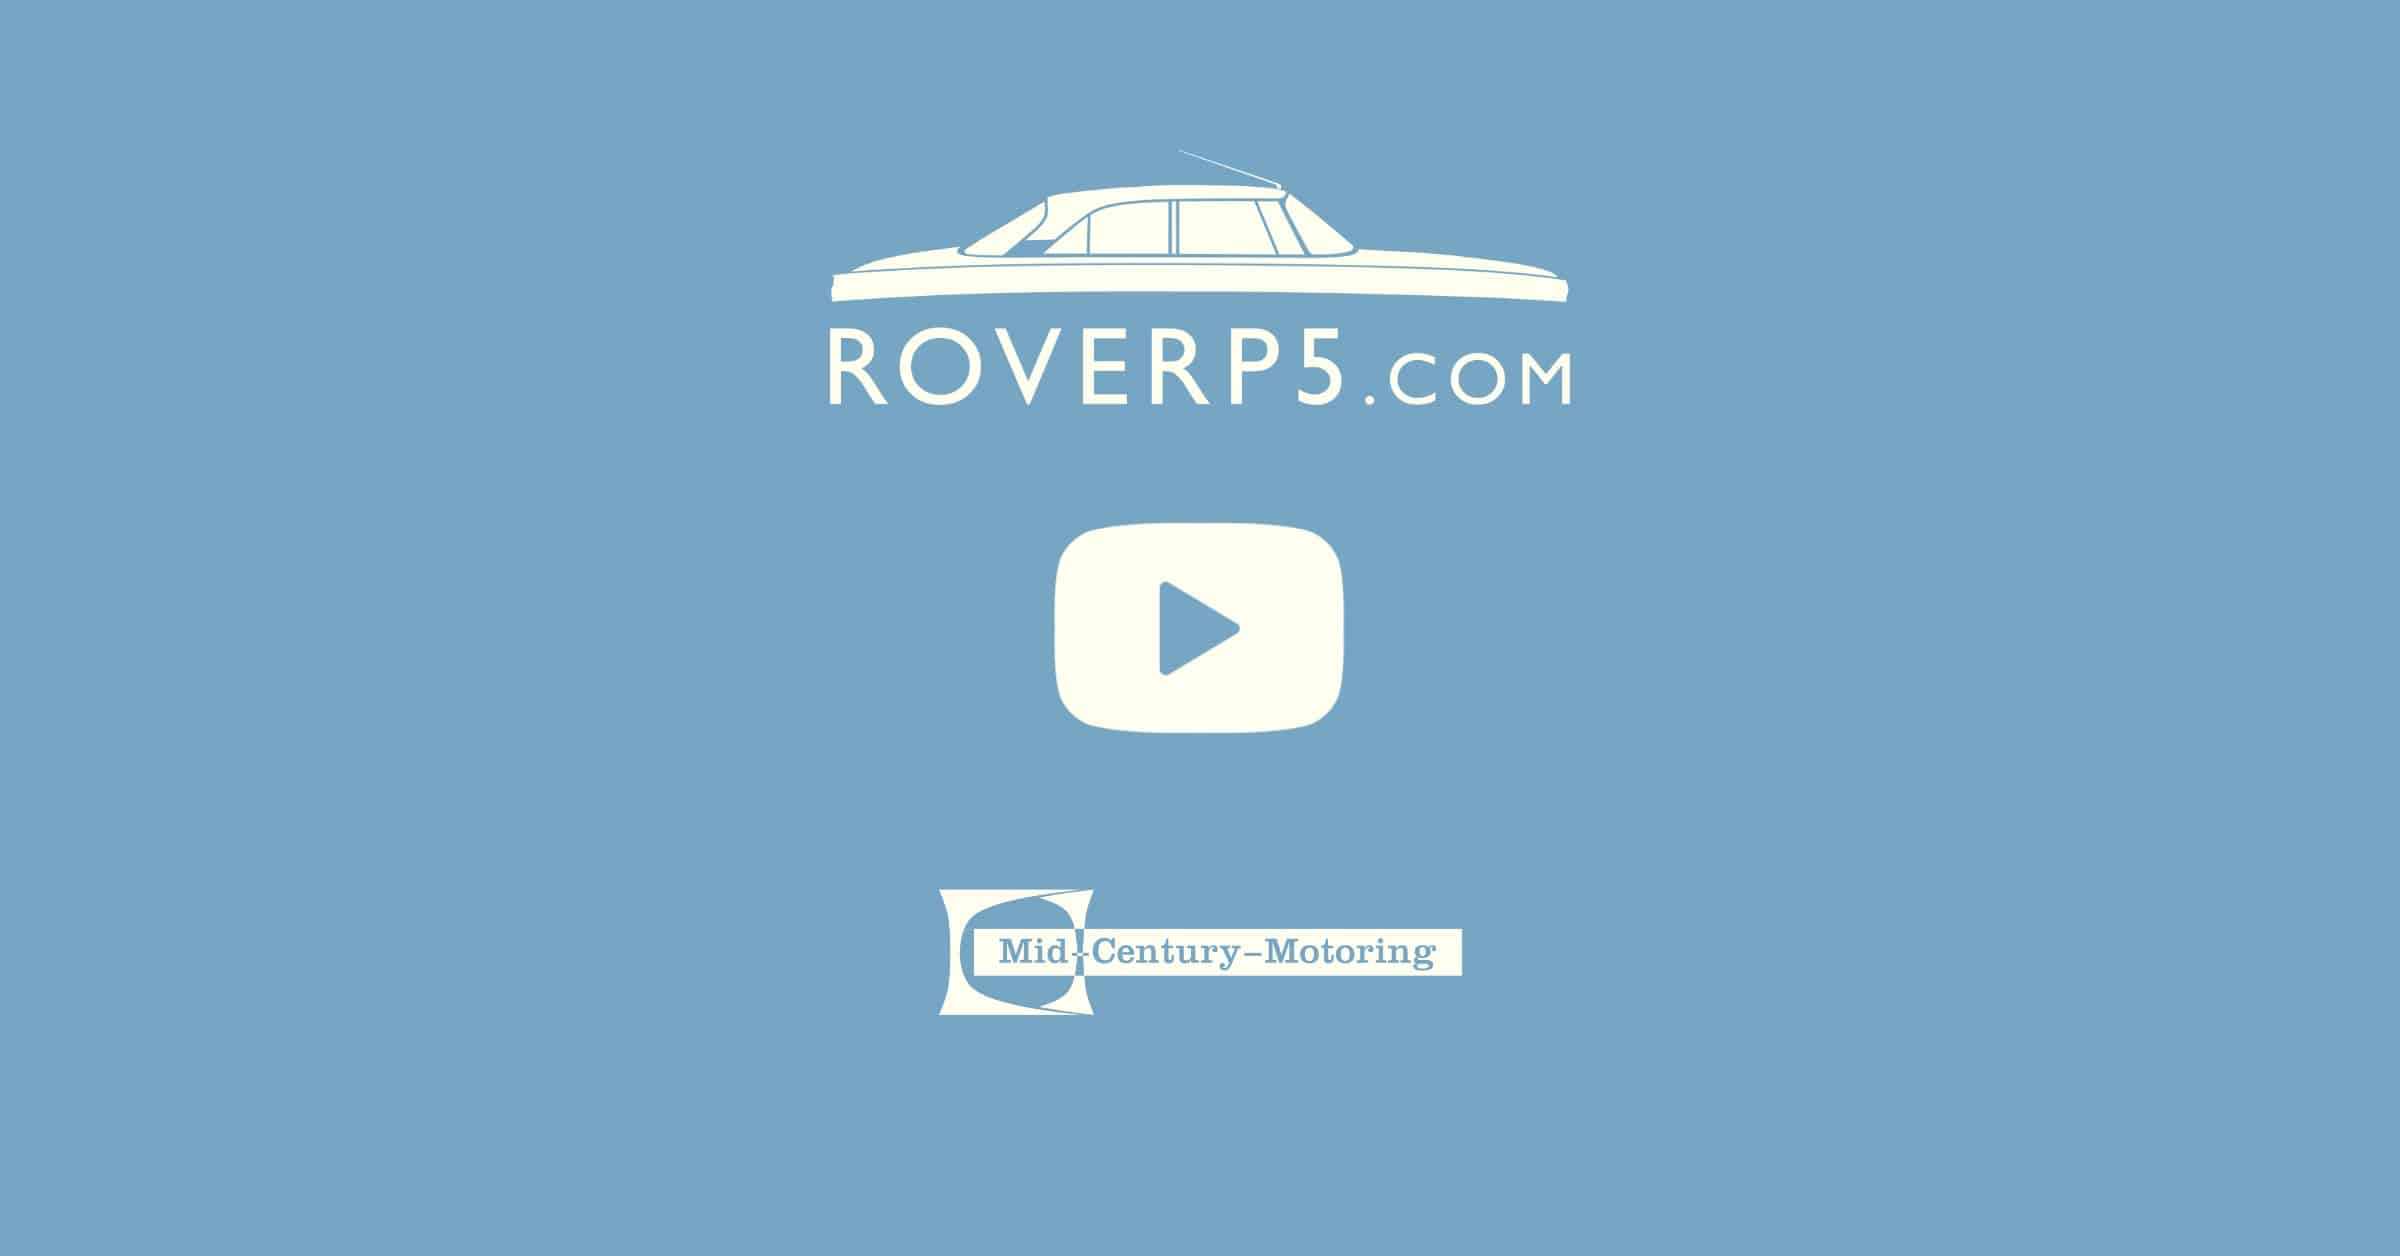 RoverP5.com Video: Rover P5B Handbrake. IN ACTION!